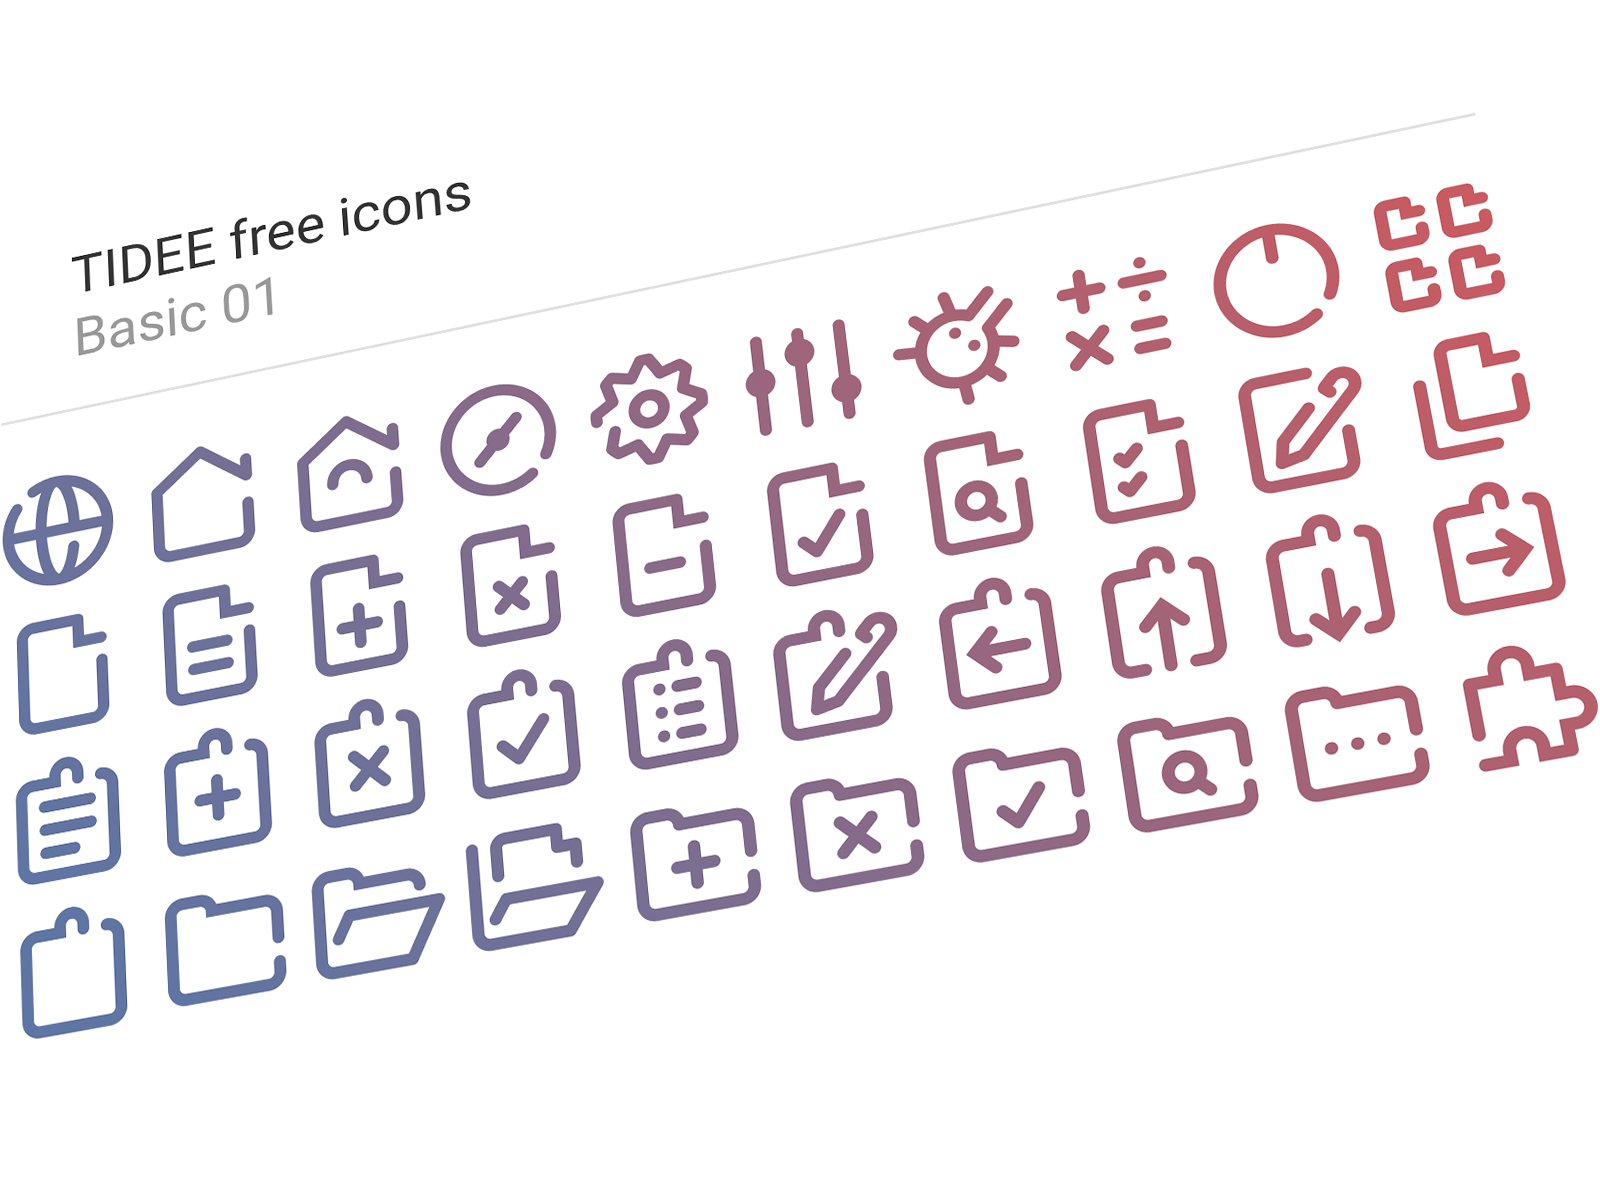 40 Free Tidee Basic icons vol.01 24px free freebie icojam icons vector